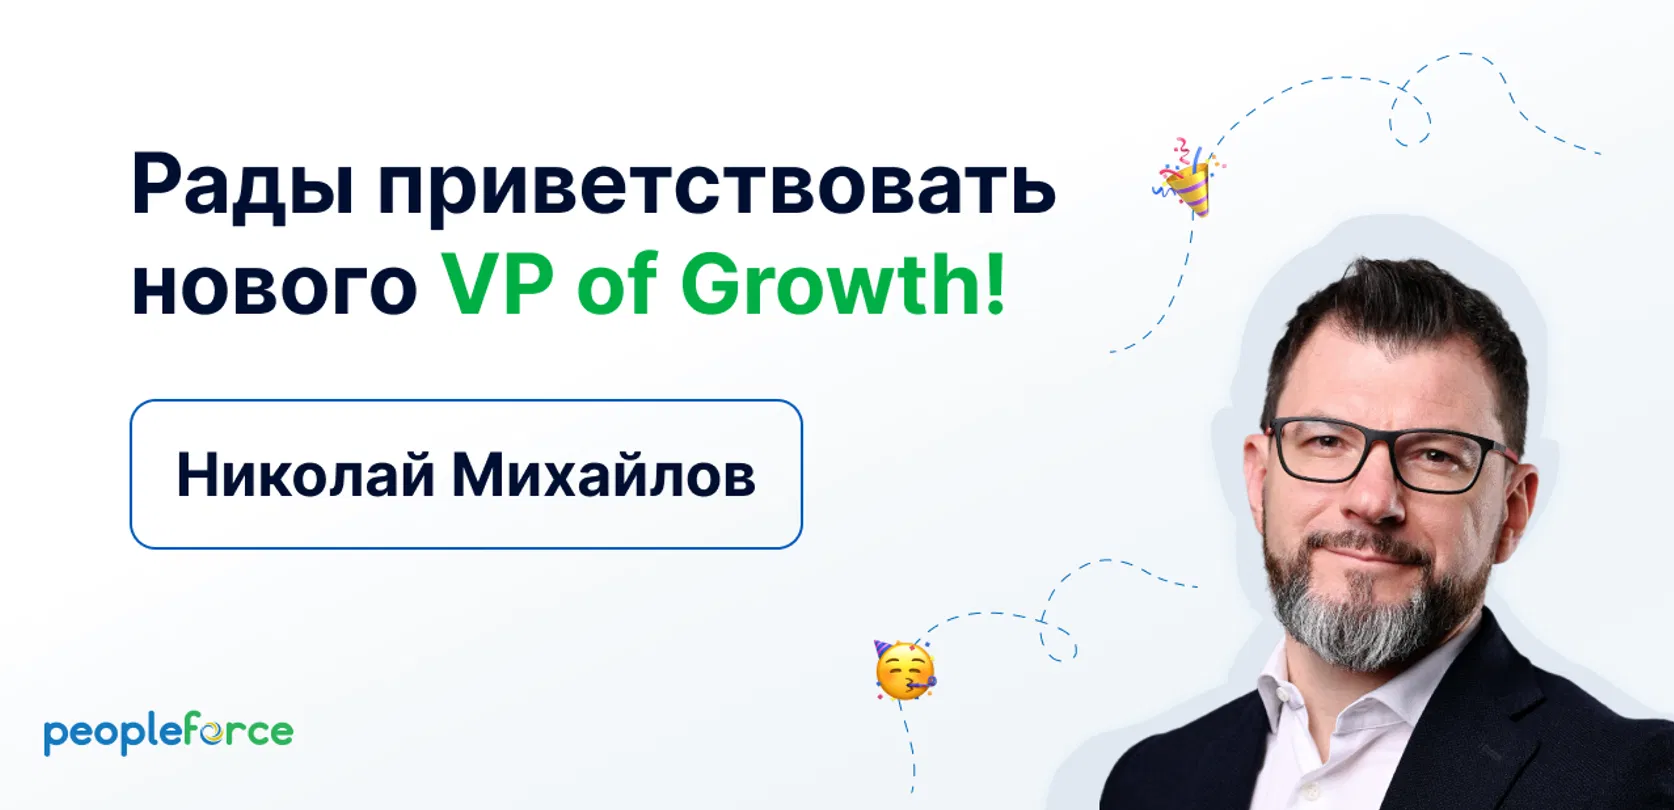 Рады приветствовать Николая Михайлова на позиции VP of Growth в PeopleForce